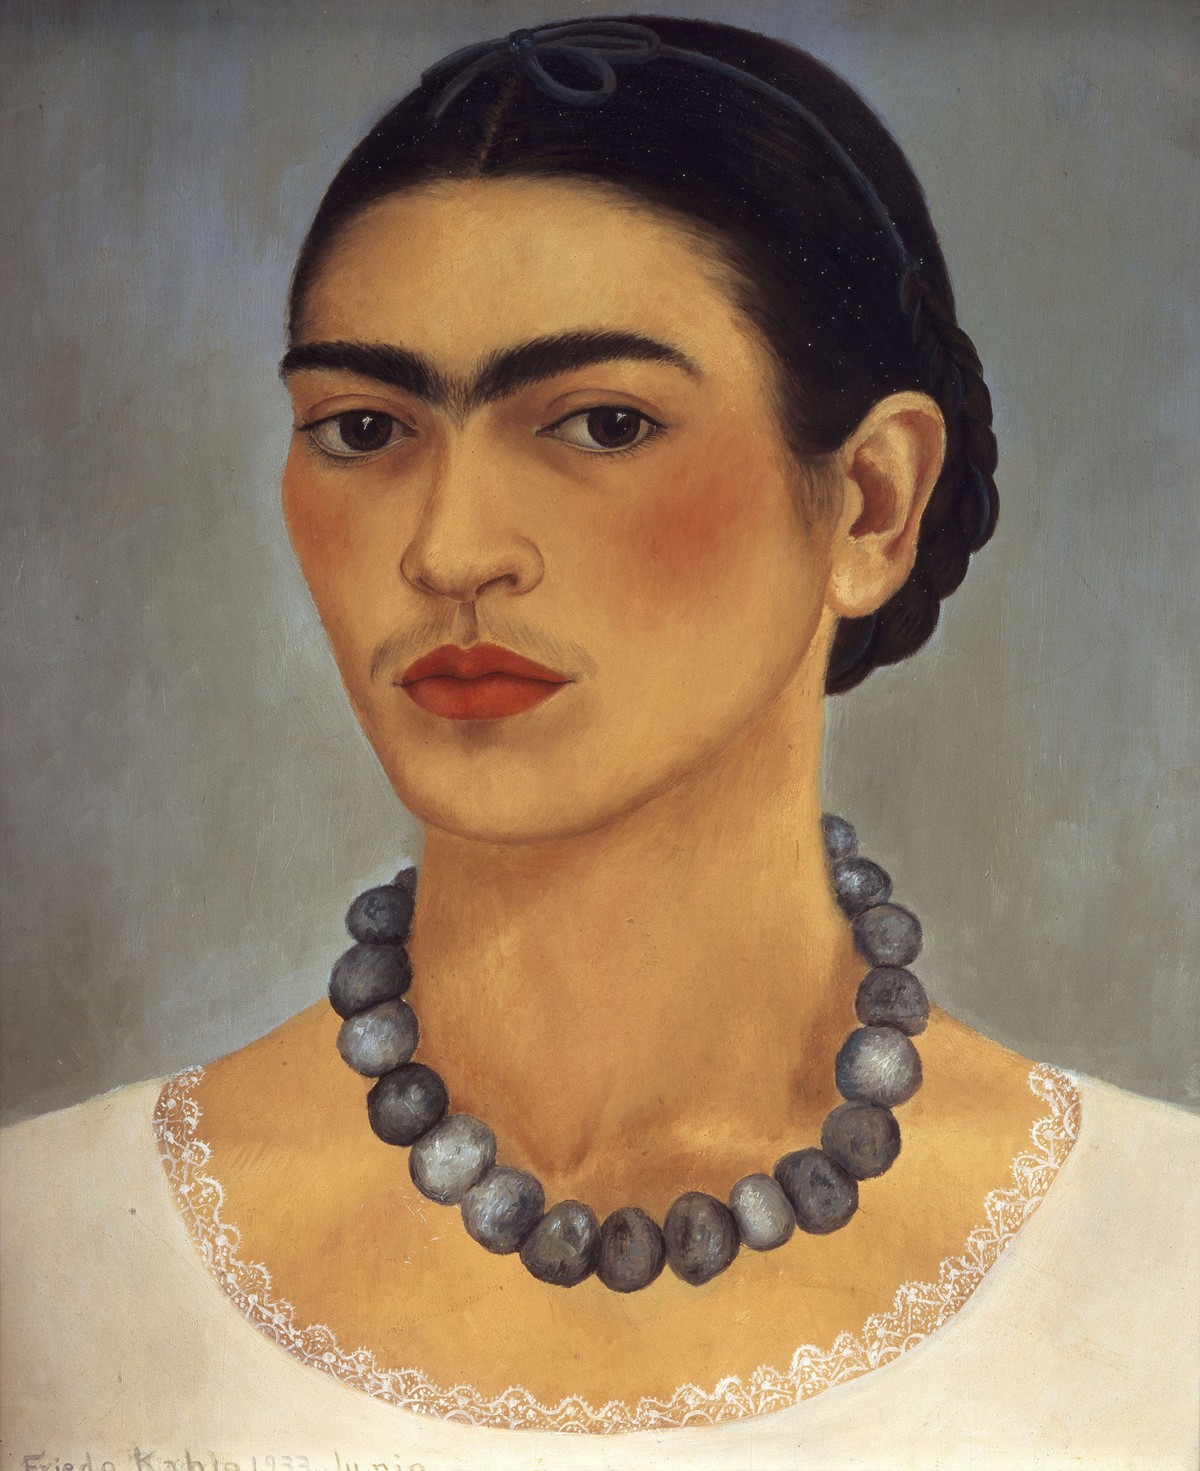 Gravação recuperada no México pode ser único registro conhecido da voz de Frida Kahlo, diz governo | Pop & Arte